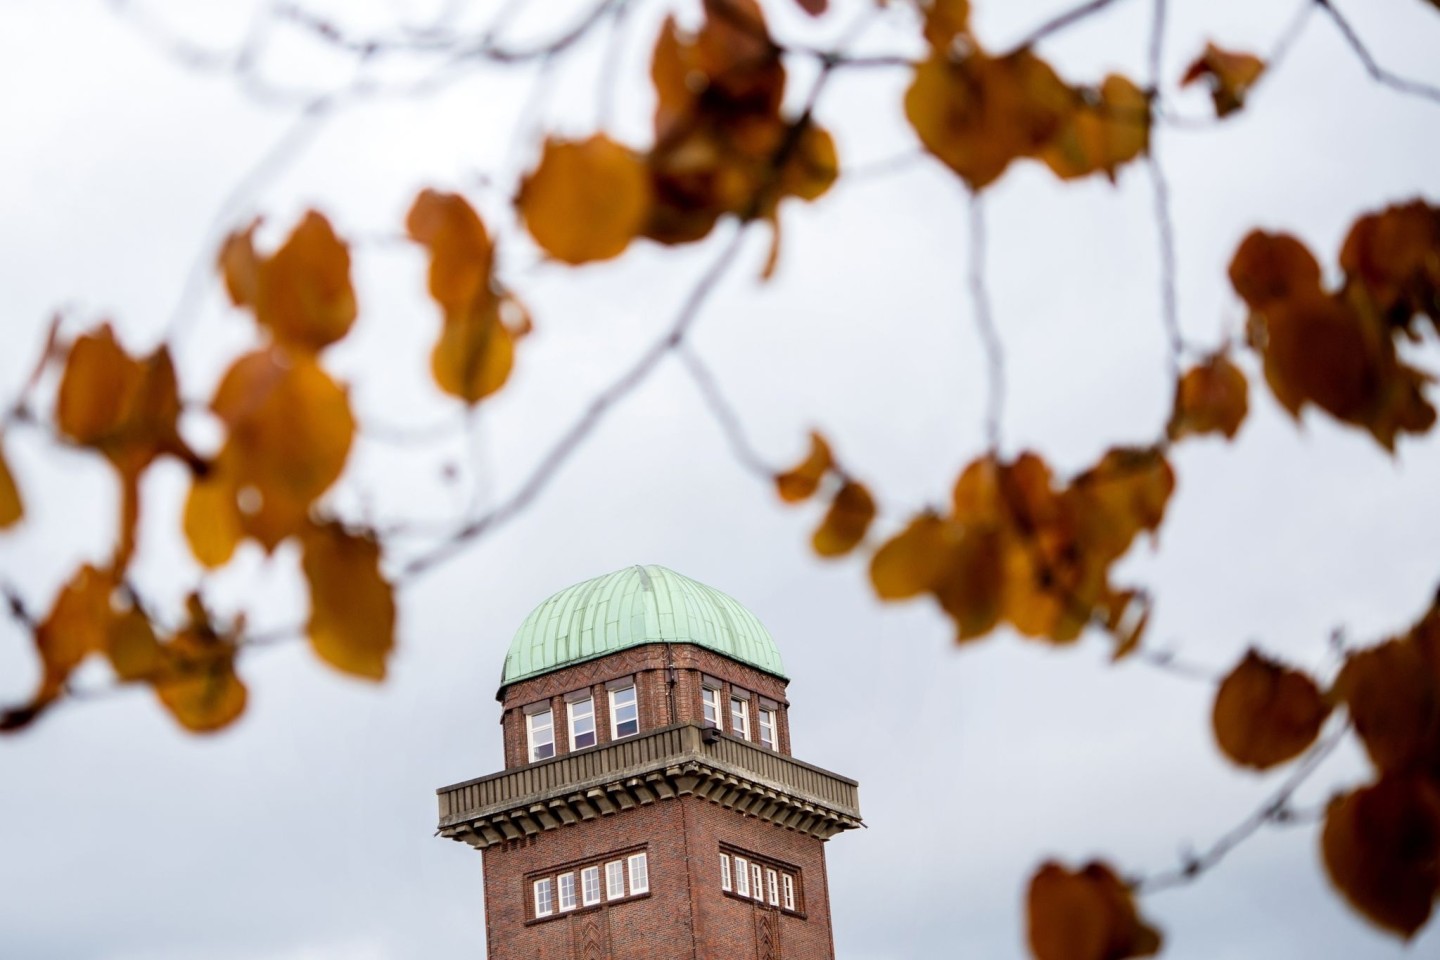 Der ehemalige Wasserturm der Alten Fleiwa steht in trübem Herbstlicht hinter den Blättern eines Baums im Botanischen Garten.